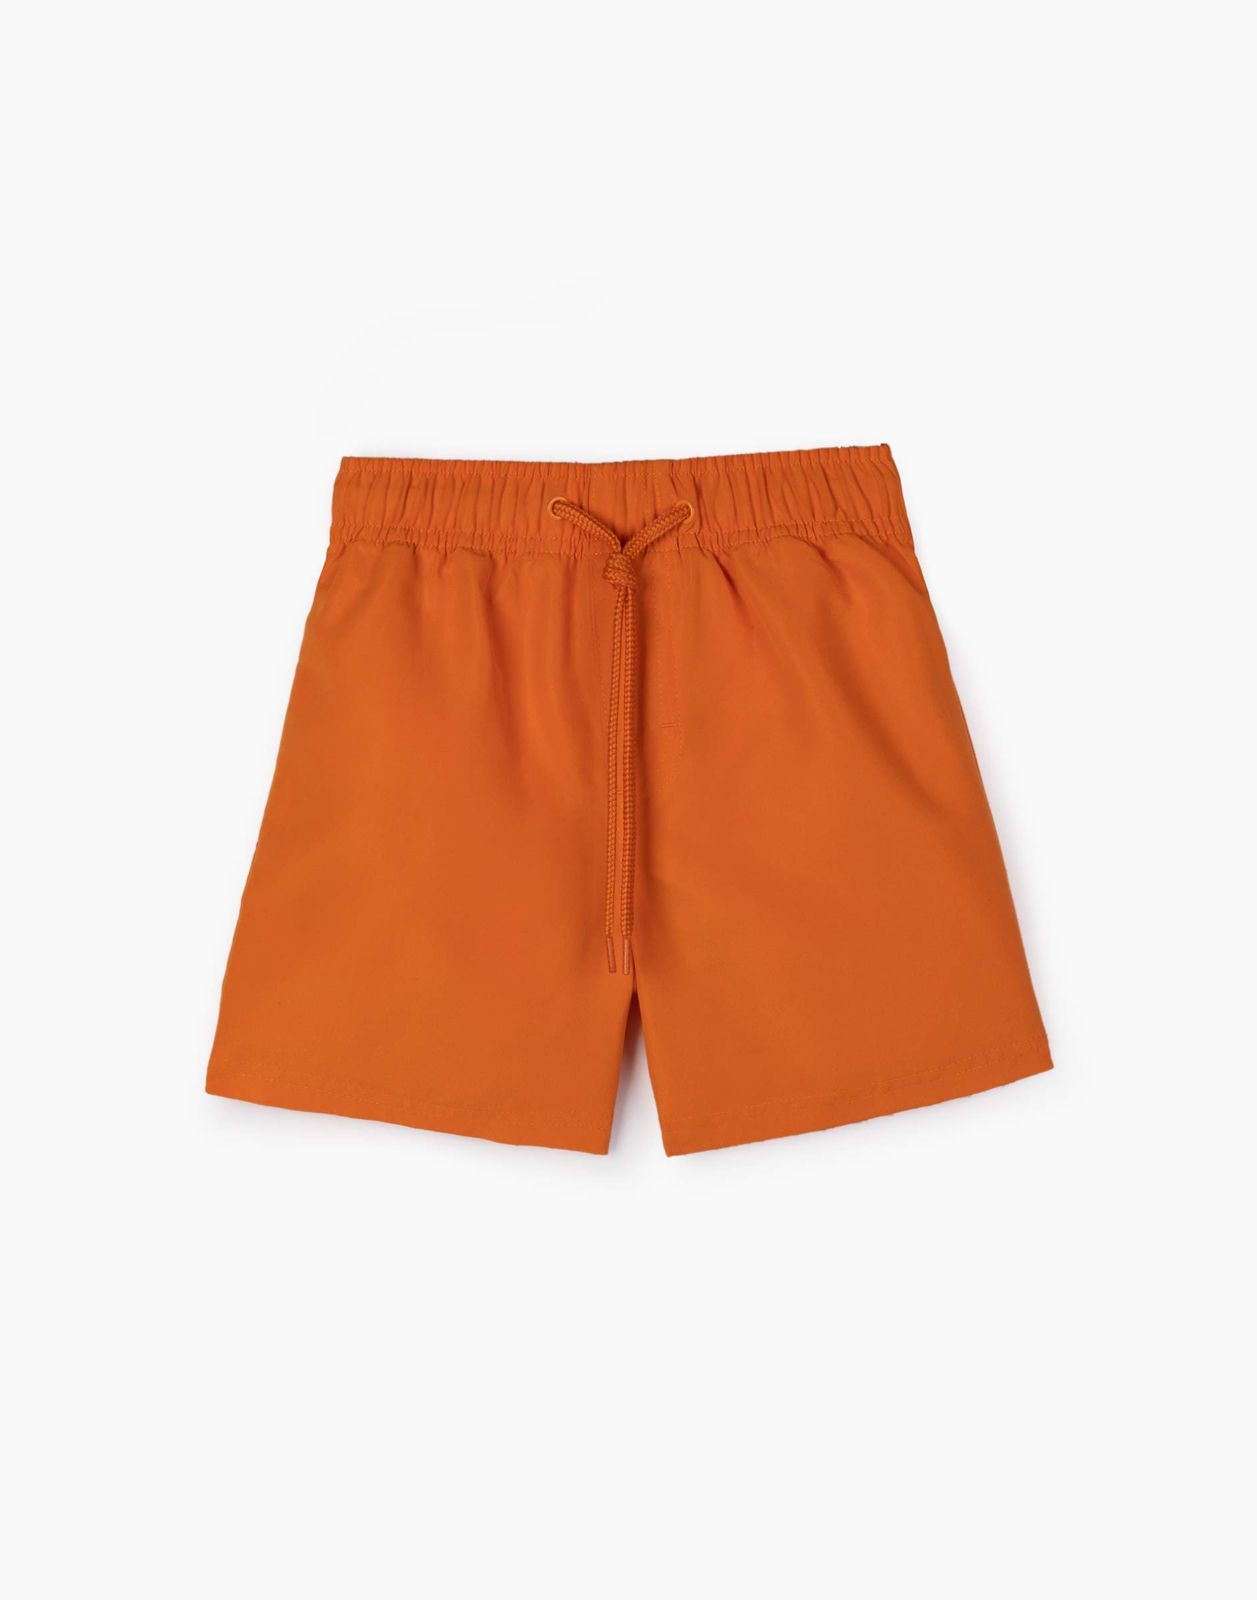 Пляжные шорты для мальчика Gloria Jeans BSM000720 оранжевый 4-6л/116